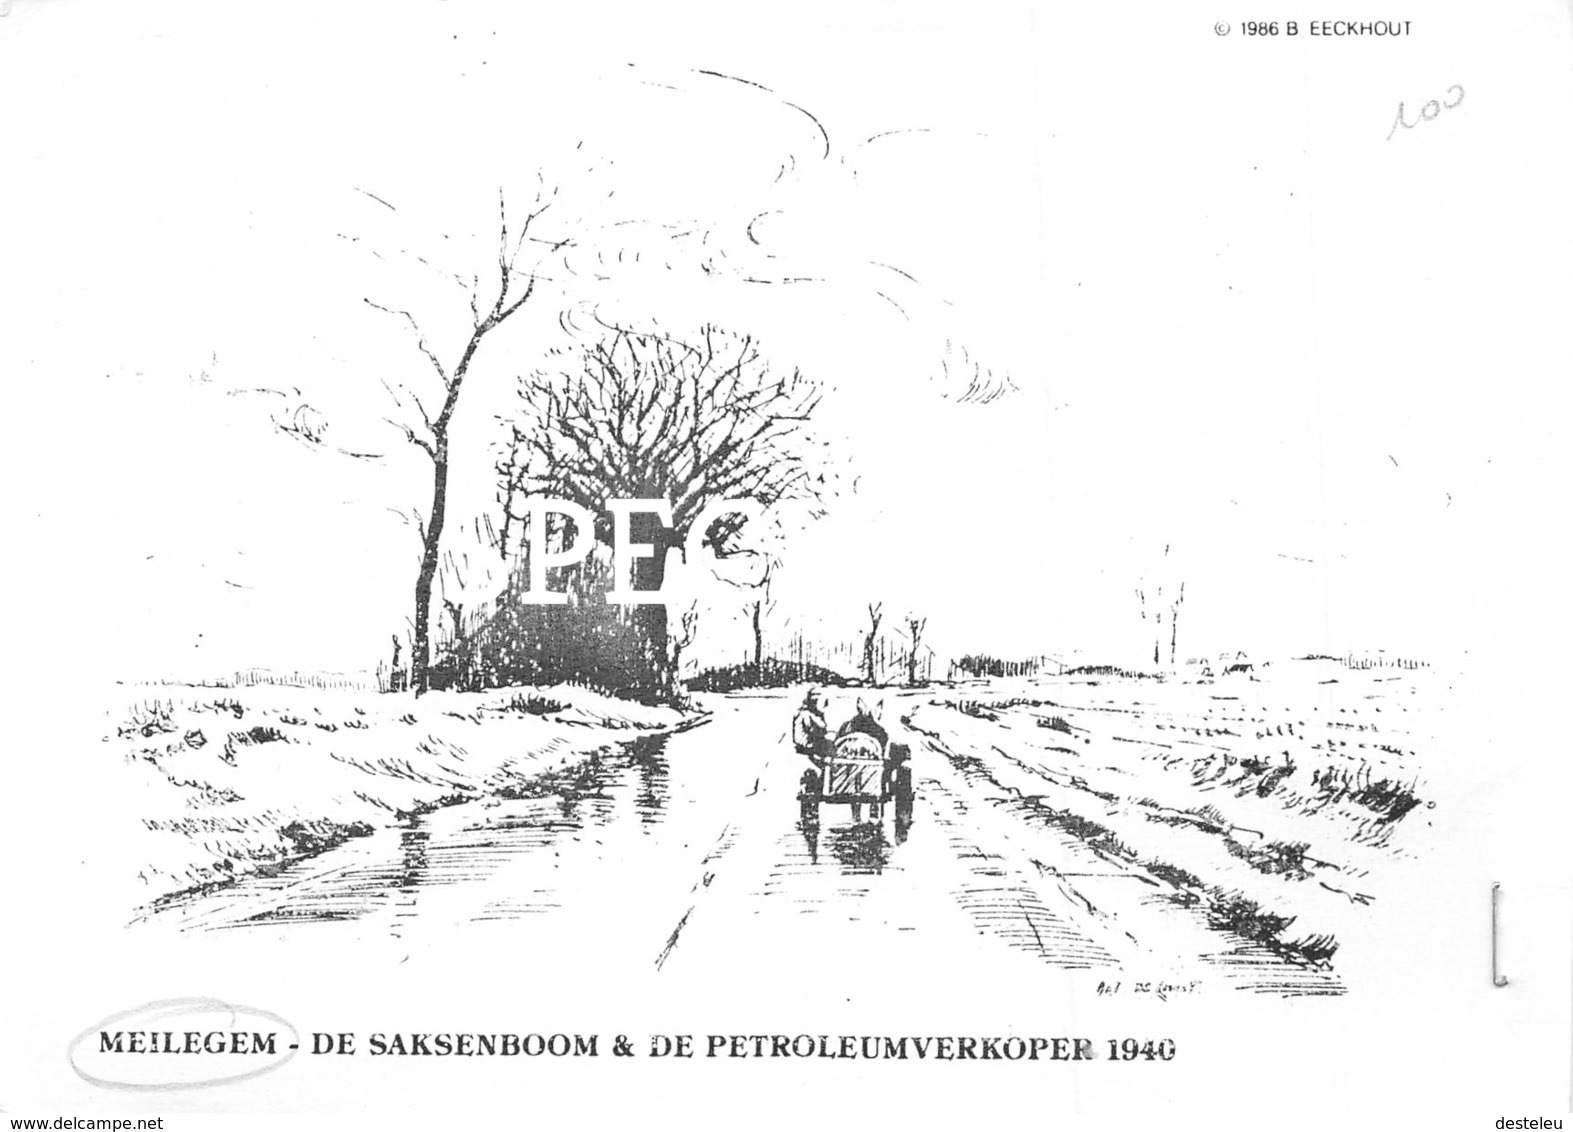 De Saksenboom & De Petroleumverkoper 1940 - Meilegem - Zwalm